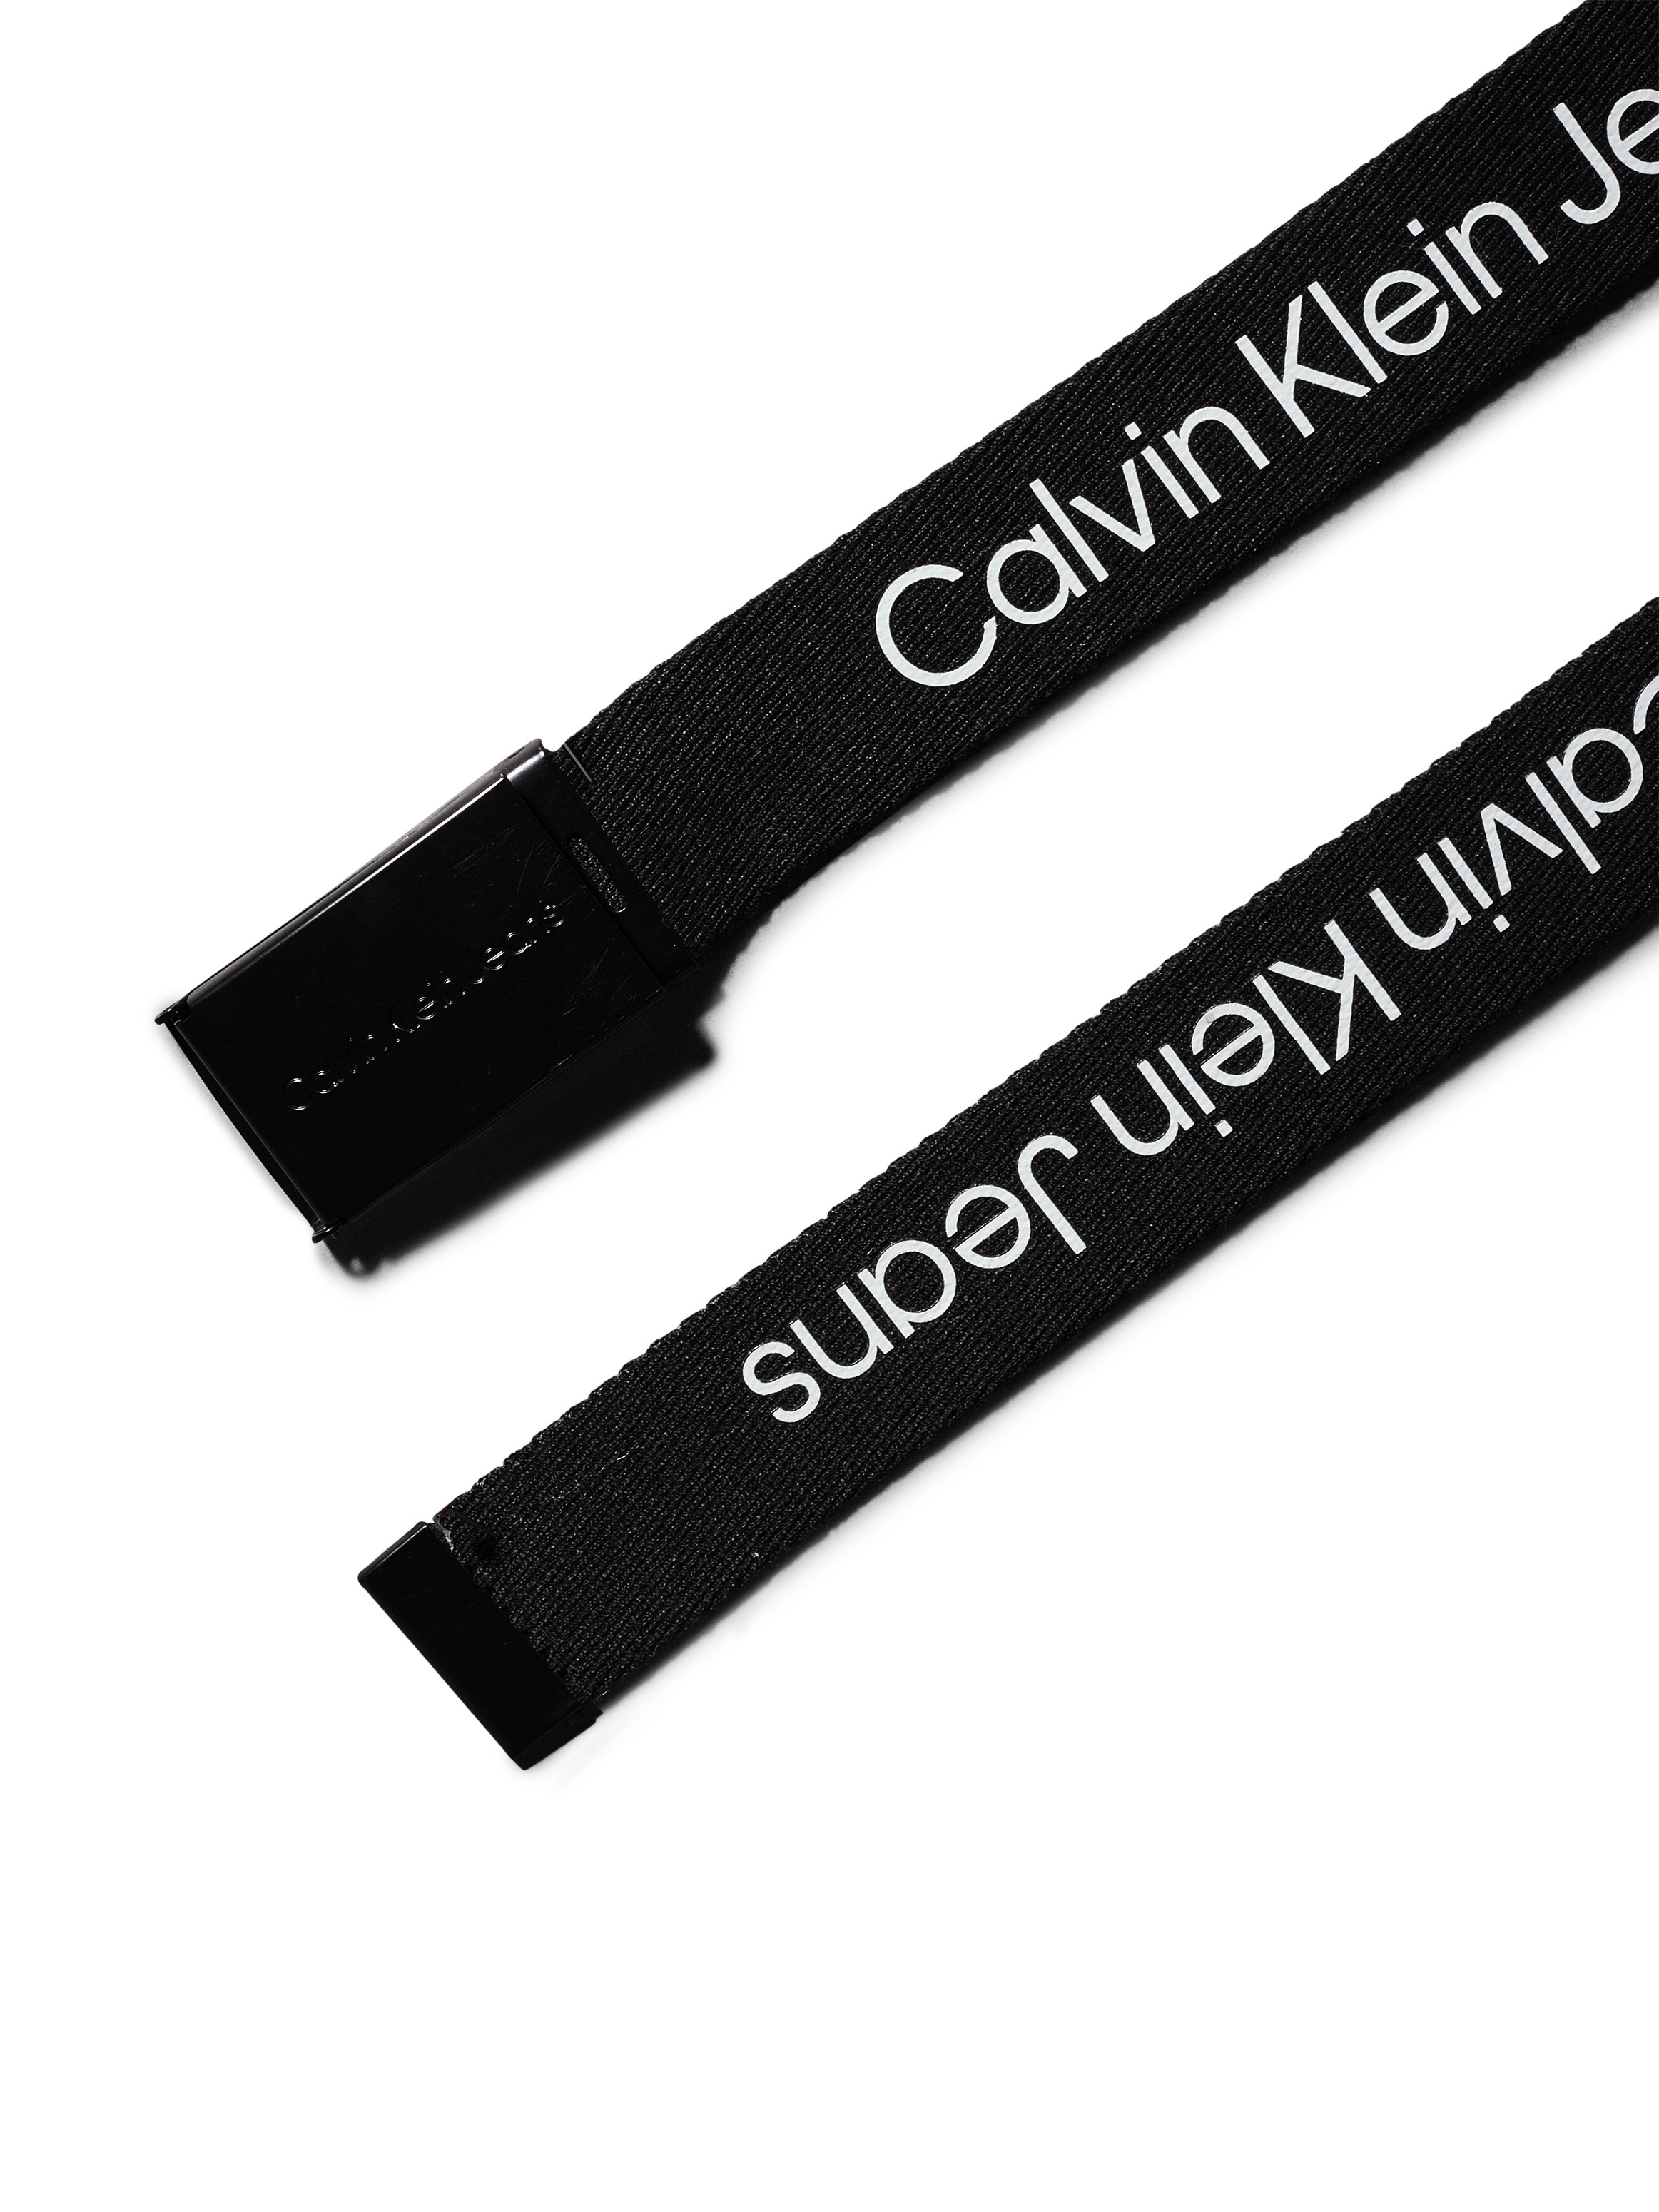 Calvin Klein Jeans Koppelgürtel »CANVAS LOGO METALLIC BUCKLE BELT«, für Kinder bis 16 Jahre